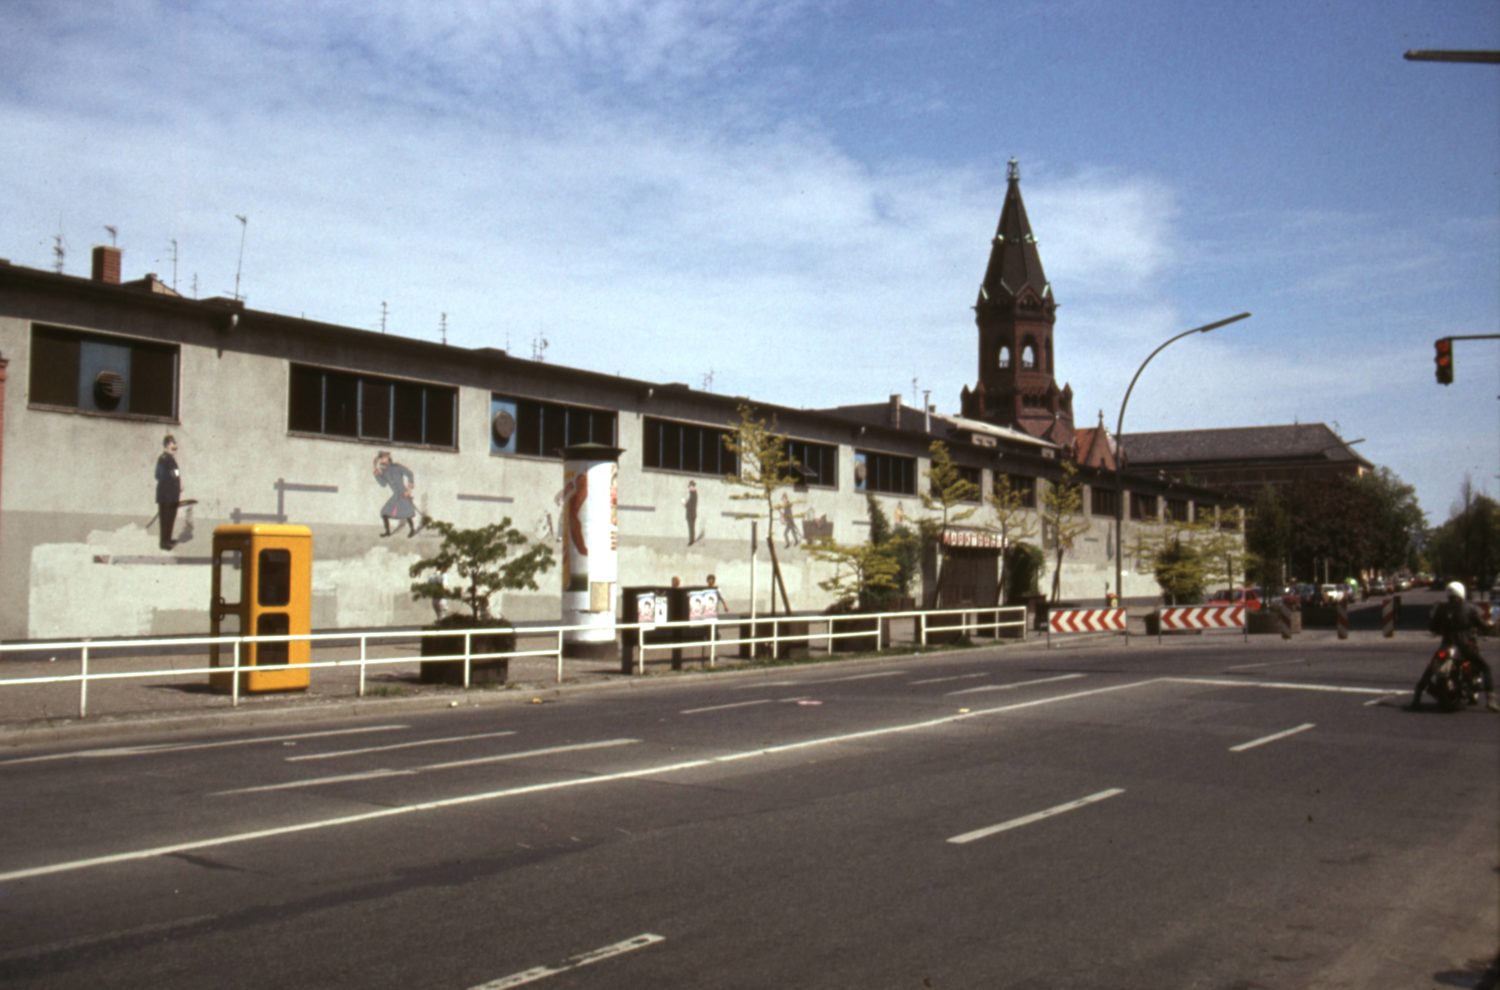 Marheineke Markthalle und Passionskirche, Kreuzberg um 1974. Foto: Imago/Serienlicht